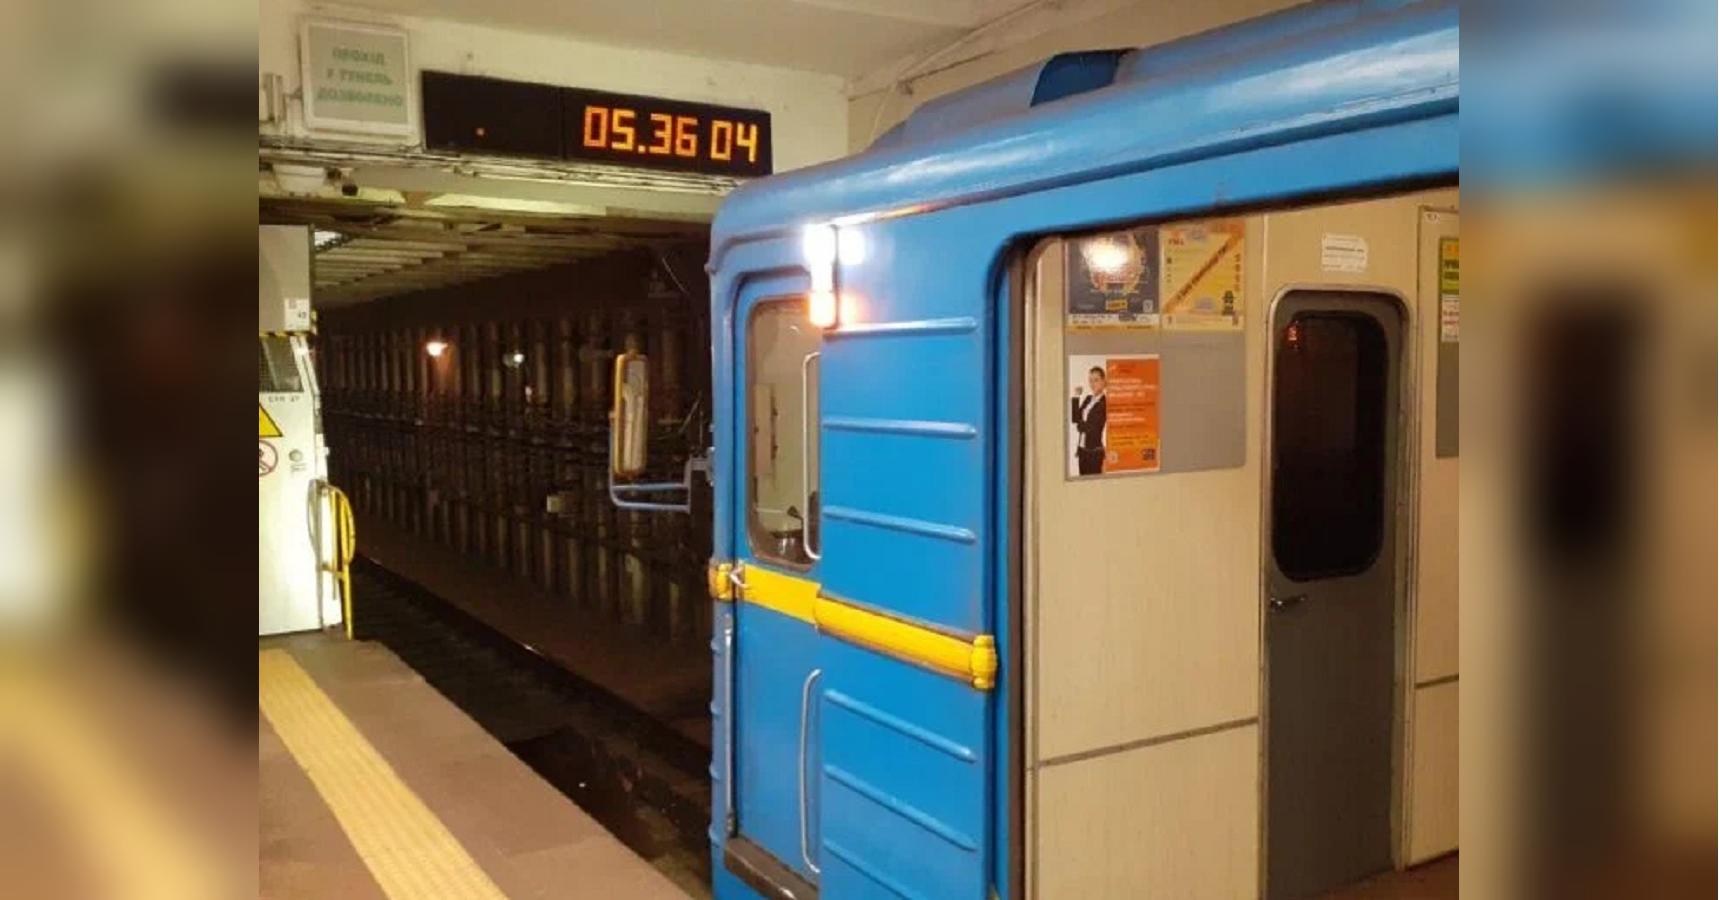 Запуск метро в Украине 25 мая: в Кабмине сделали заявление